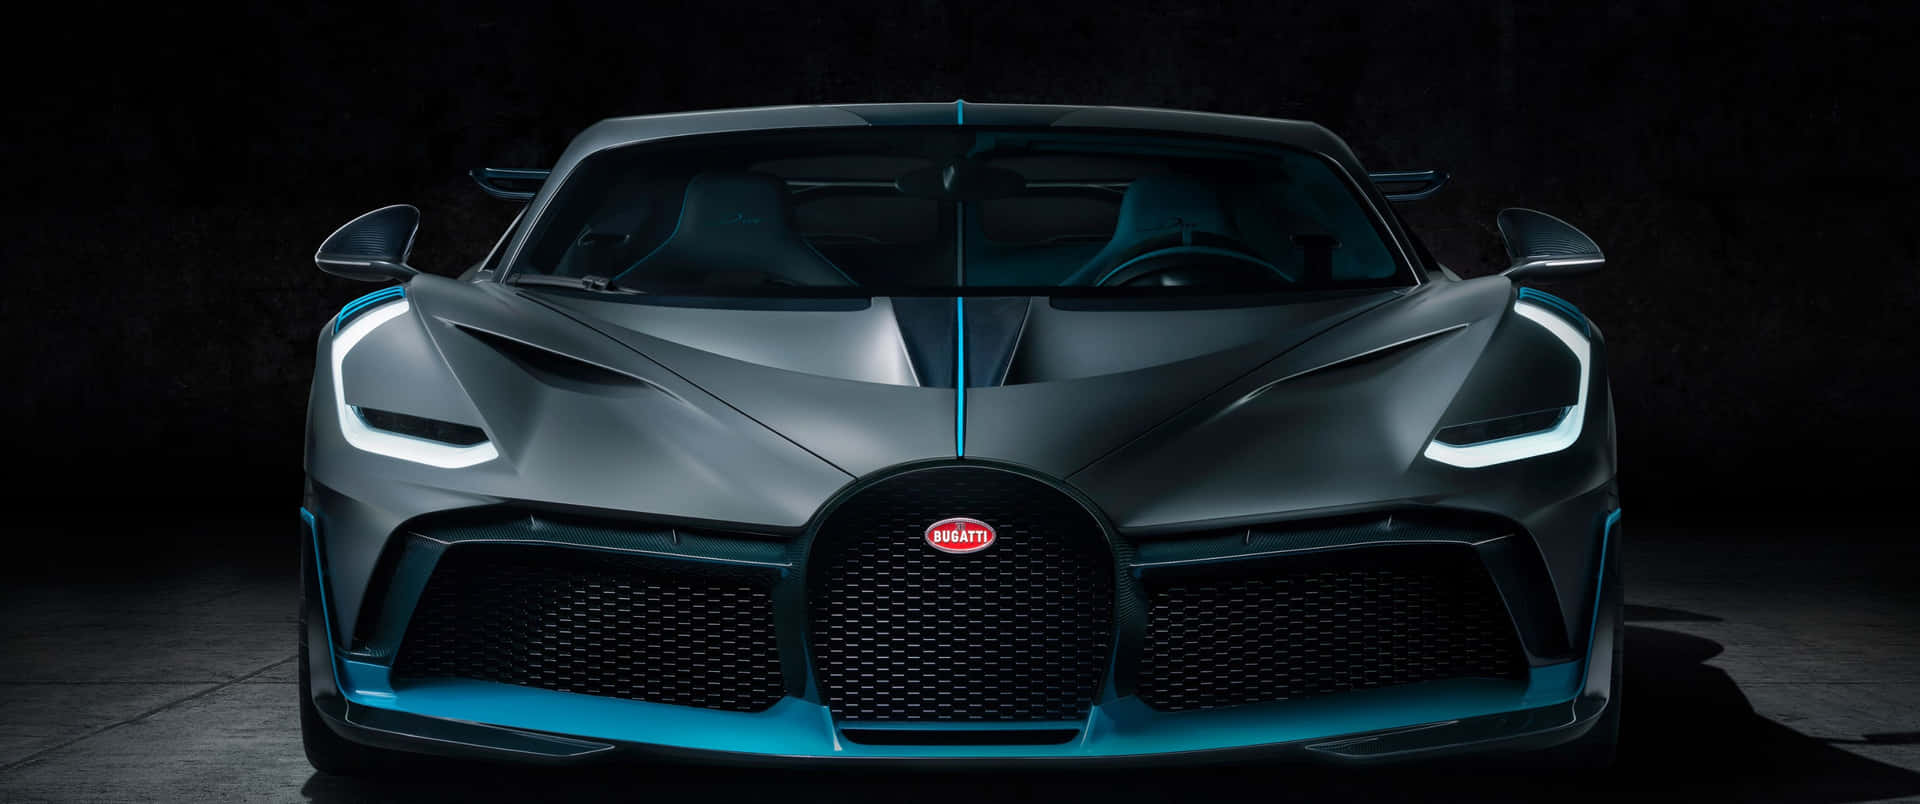 Velocitàe Stile Si Fondono In Questa Incredibile Bugatti.